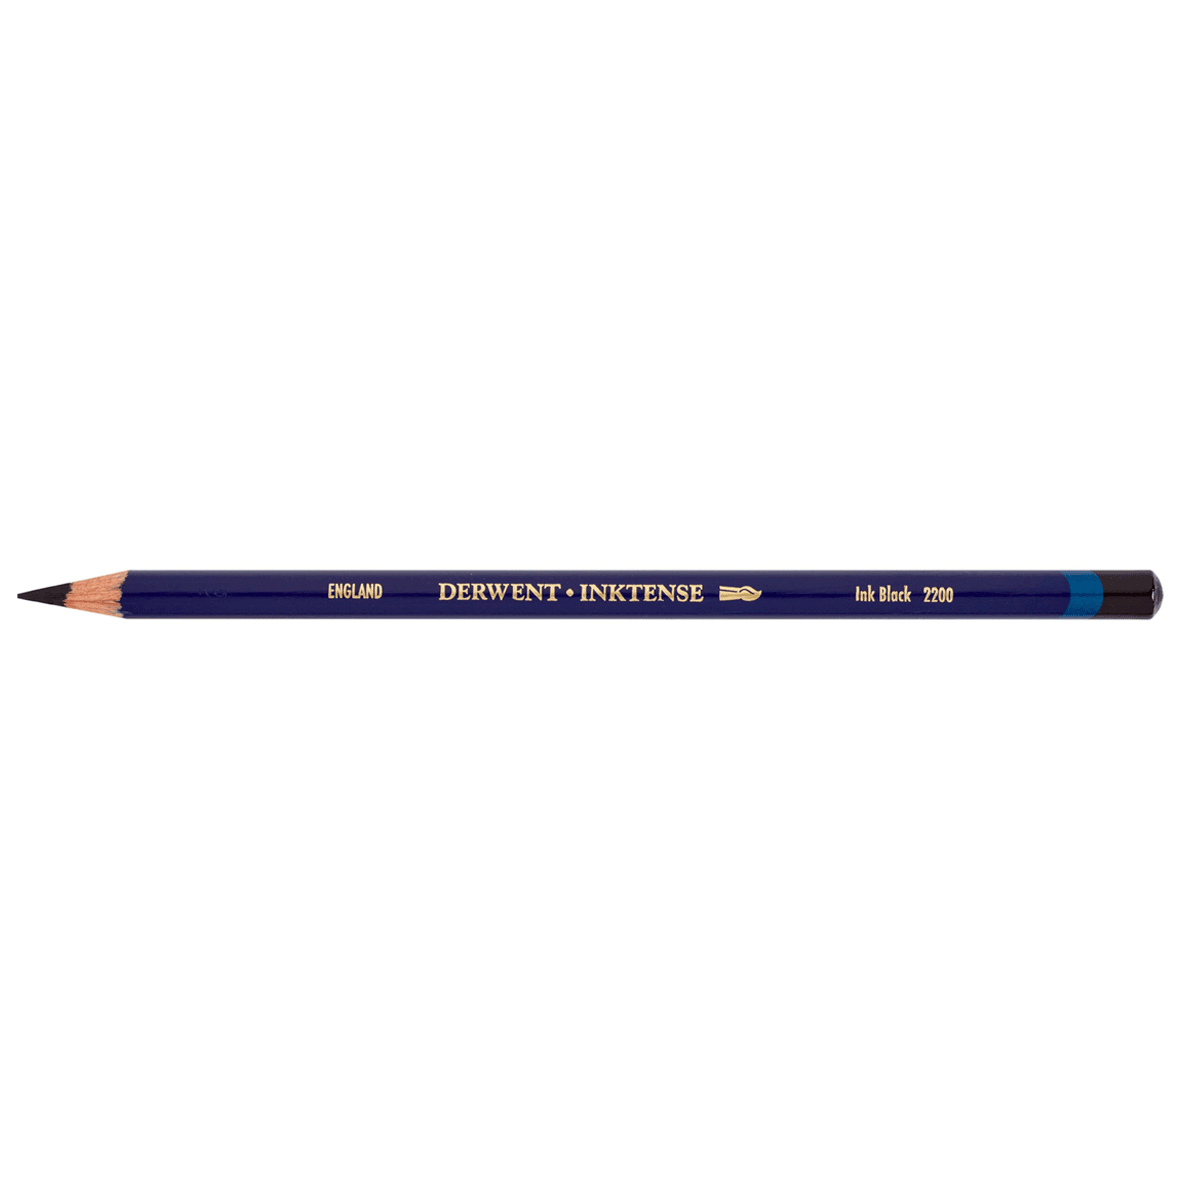 Derwent 2200 Inktense Pencil - Ink Black